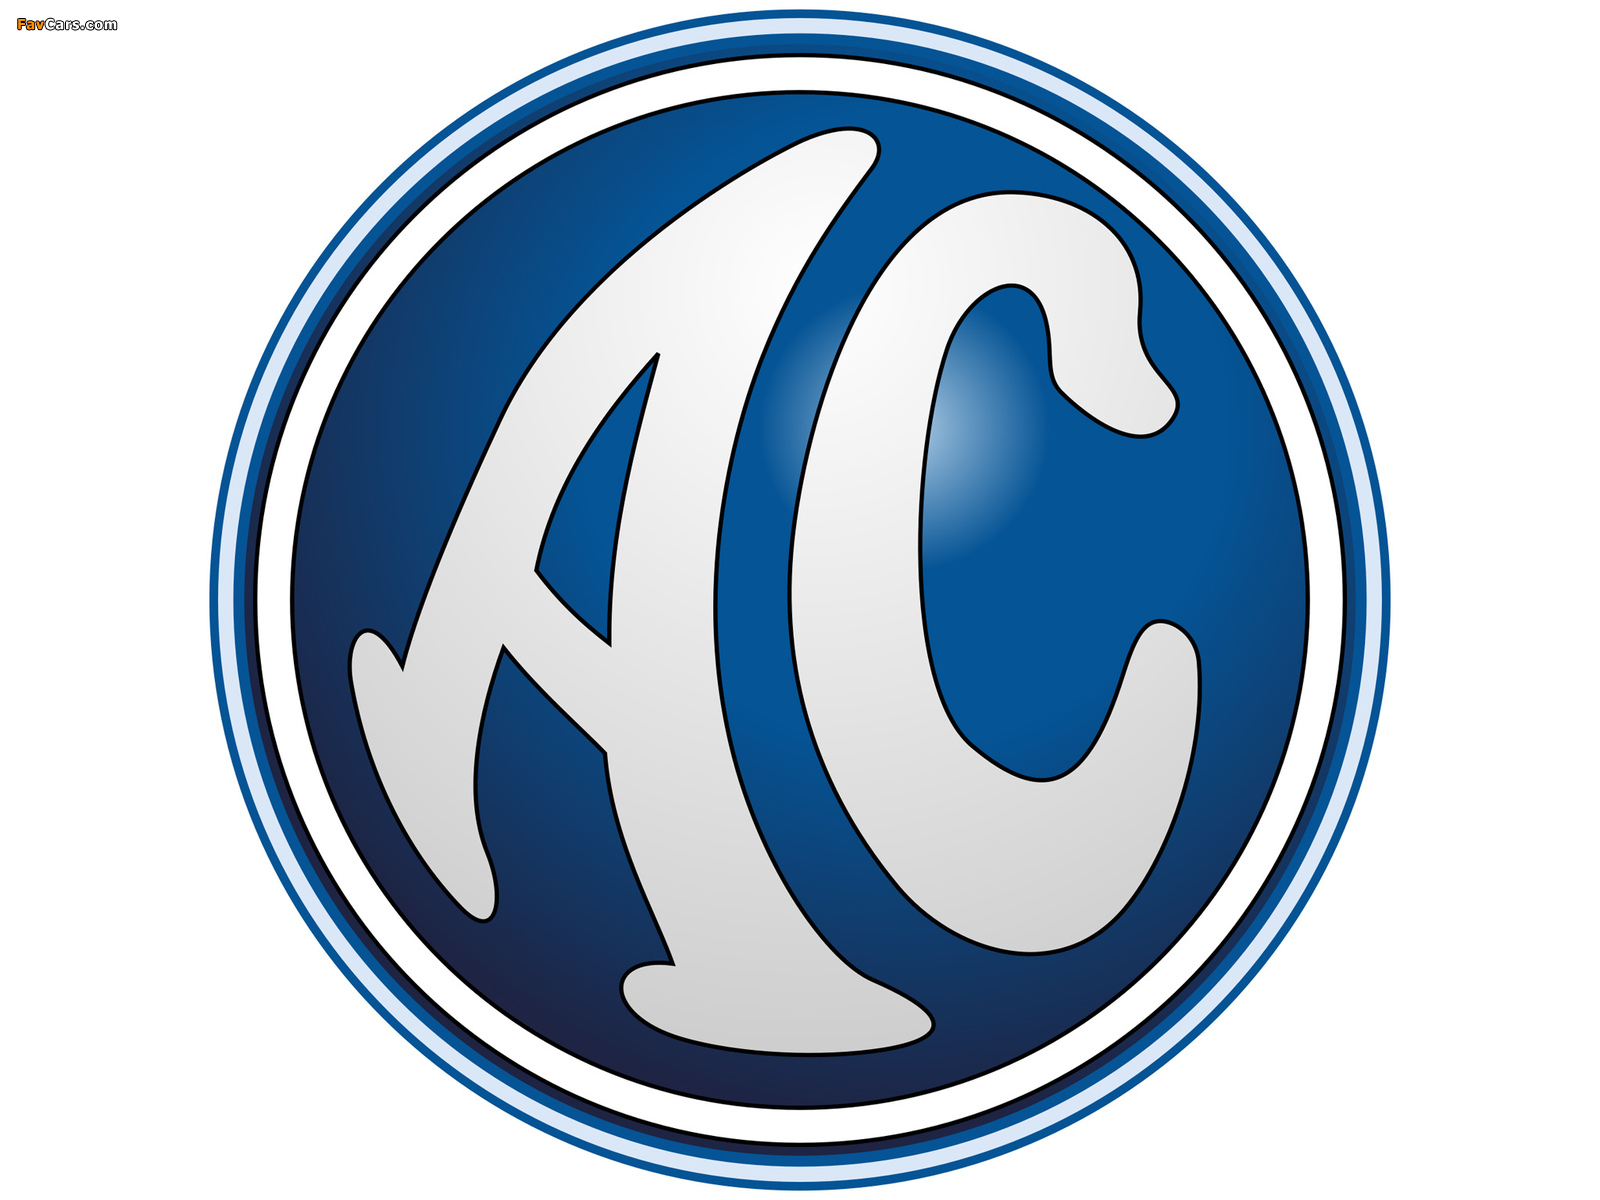 AC Logotypes photos (1600 x 1200)